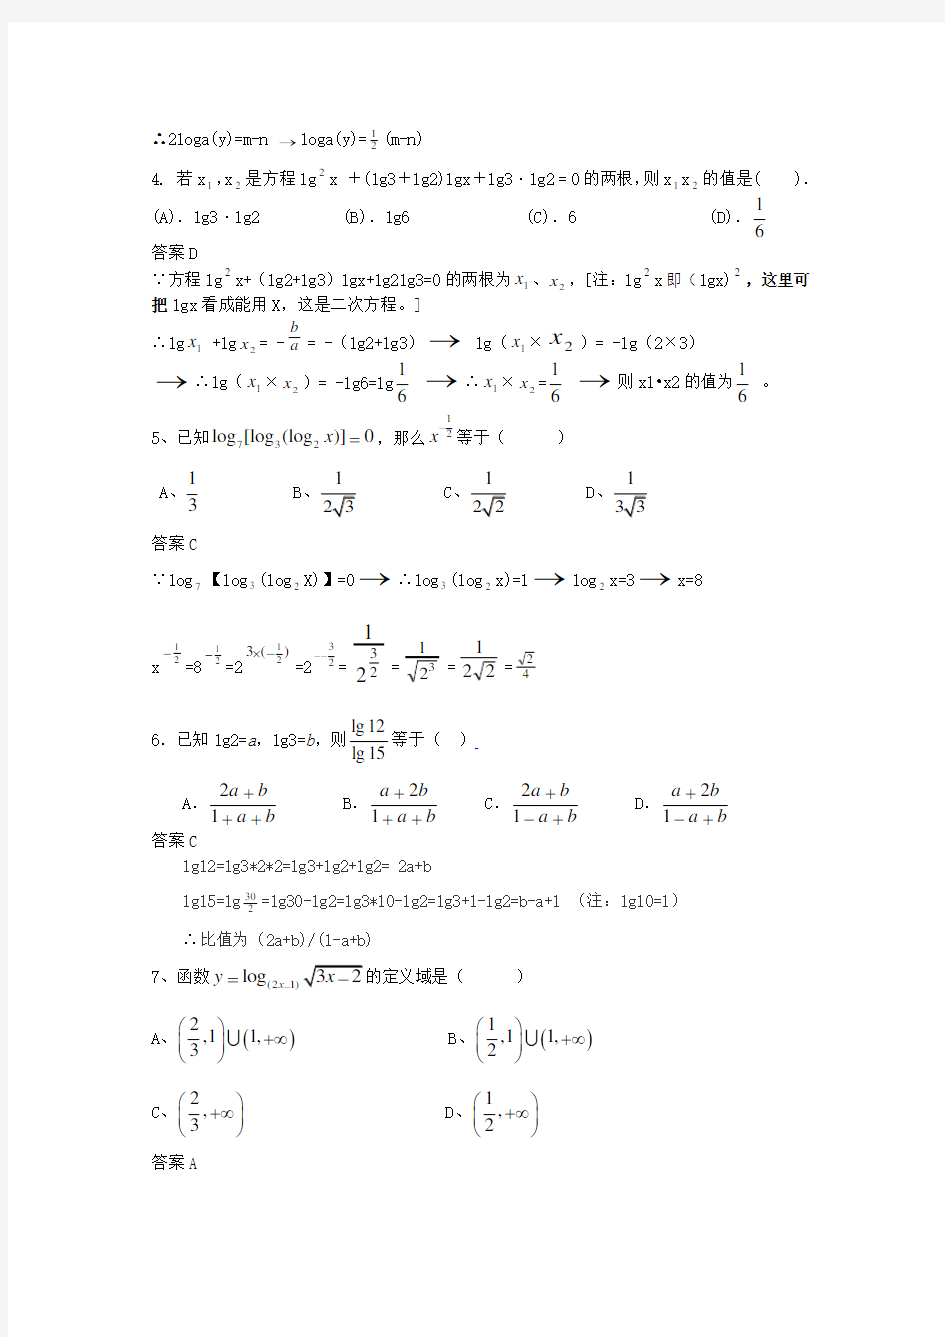 (完整)高一数学对数函数经典题及详细答案